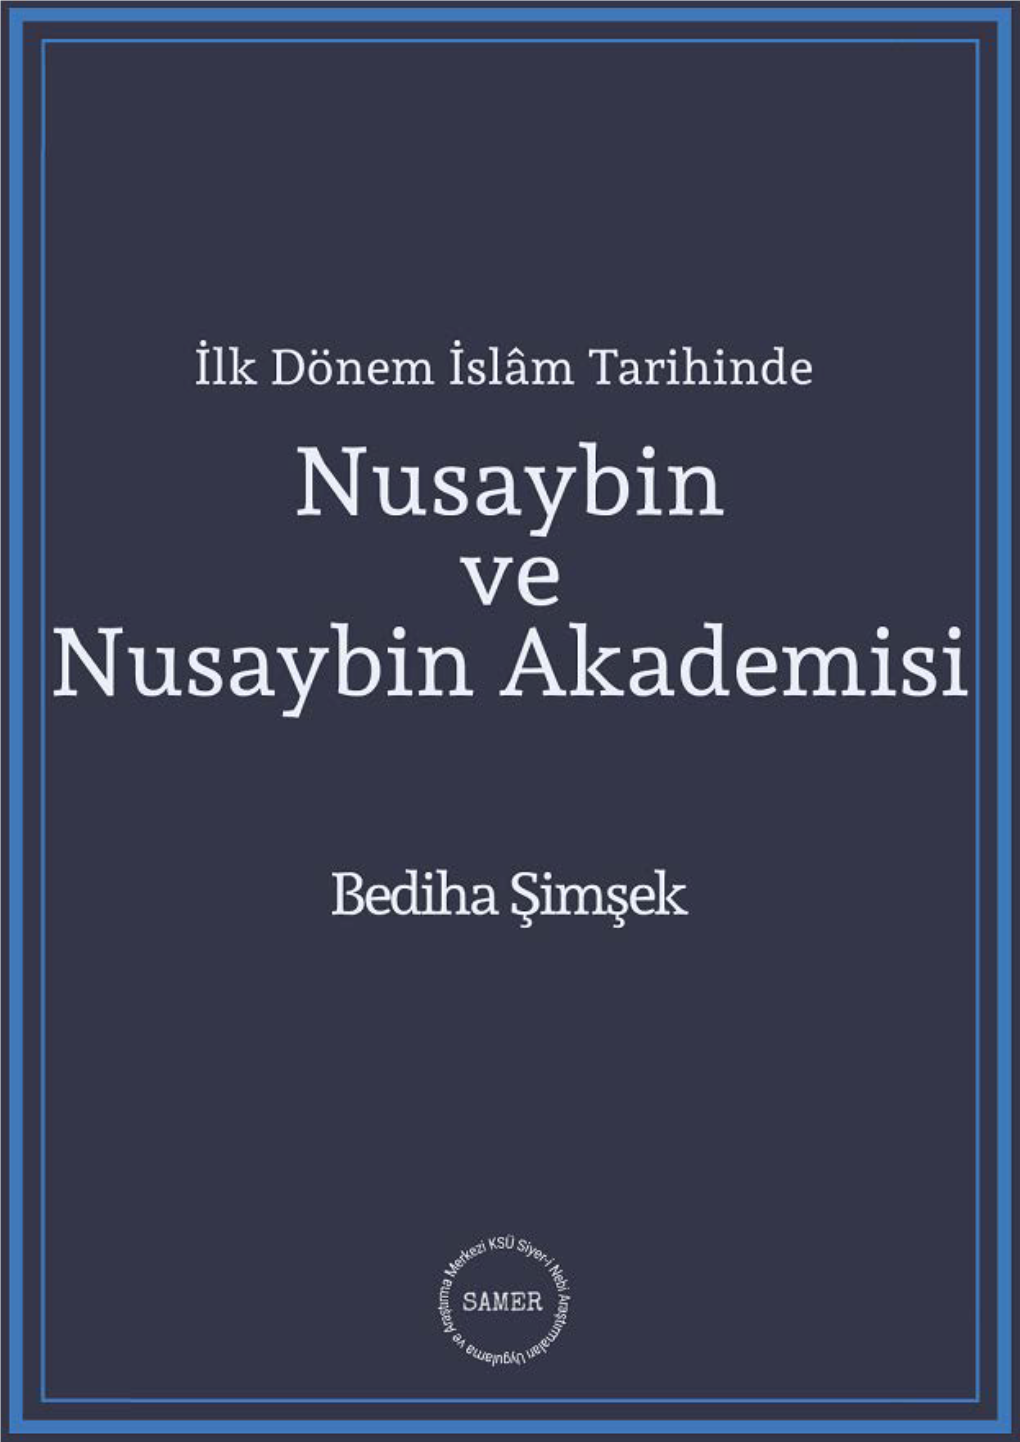 16- İlk Dönem İslam Tarihinde Nusaybin Ve Akademisi